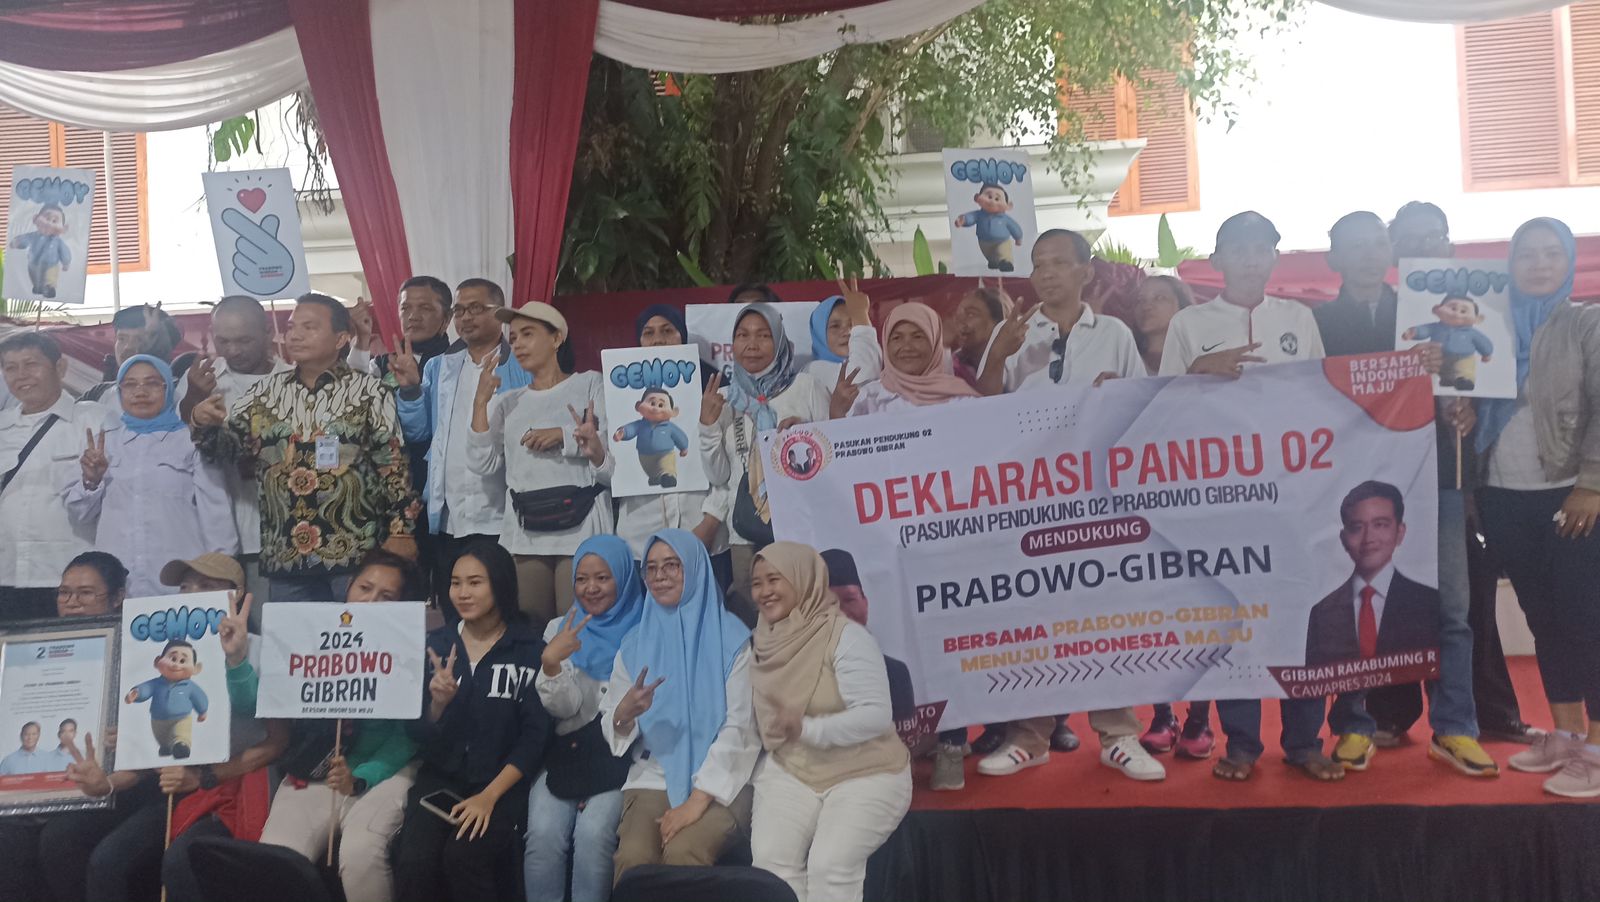 Sambangi Kertanegara, Relawan Pandu 02 resmi mendeklarasikan dukungan untuk Prabowo-Gibran. (SinPo.id/Sigit Nuryadin)